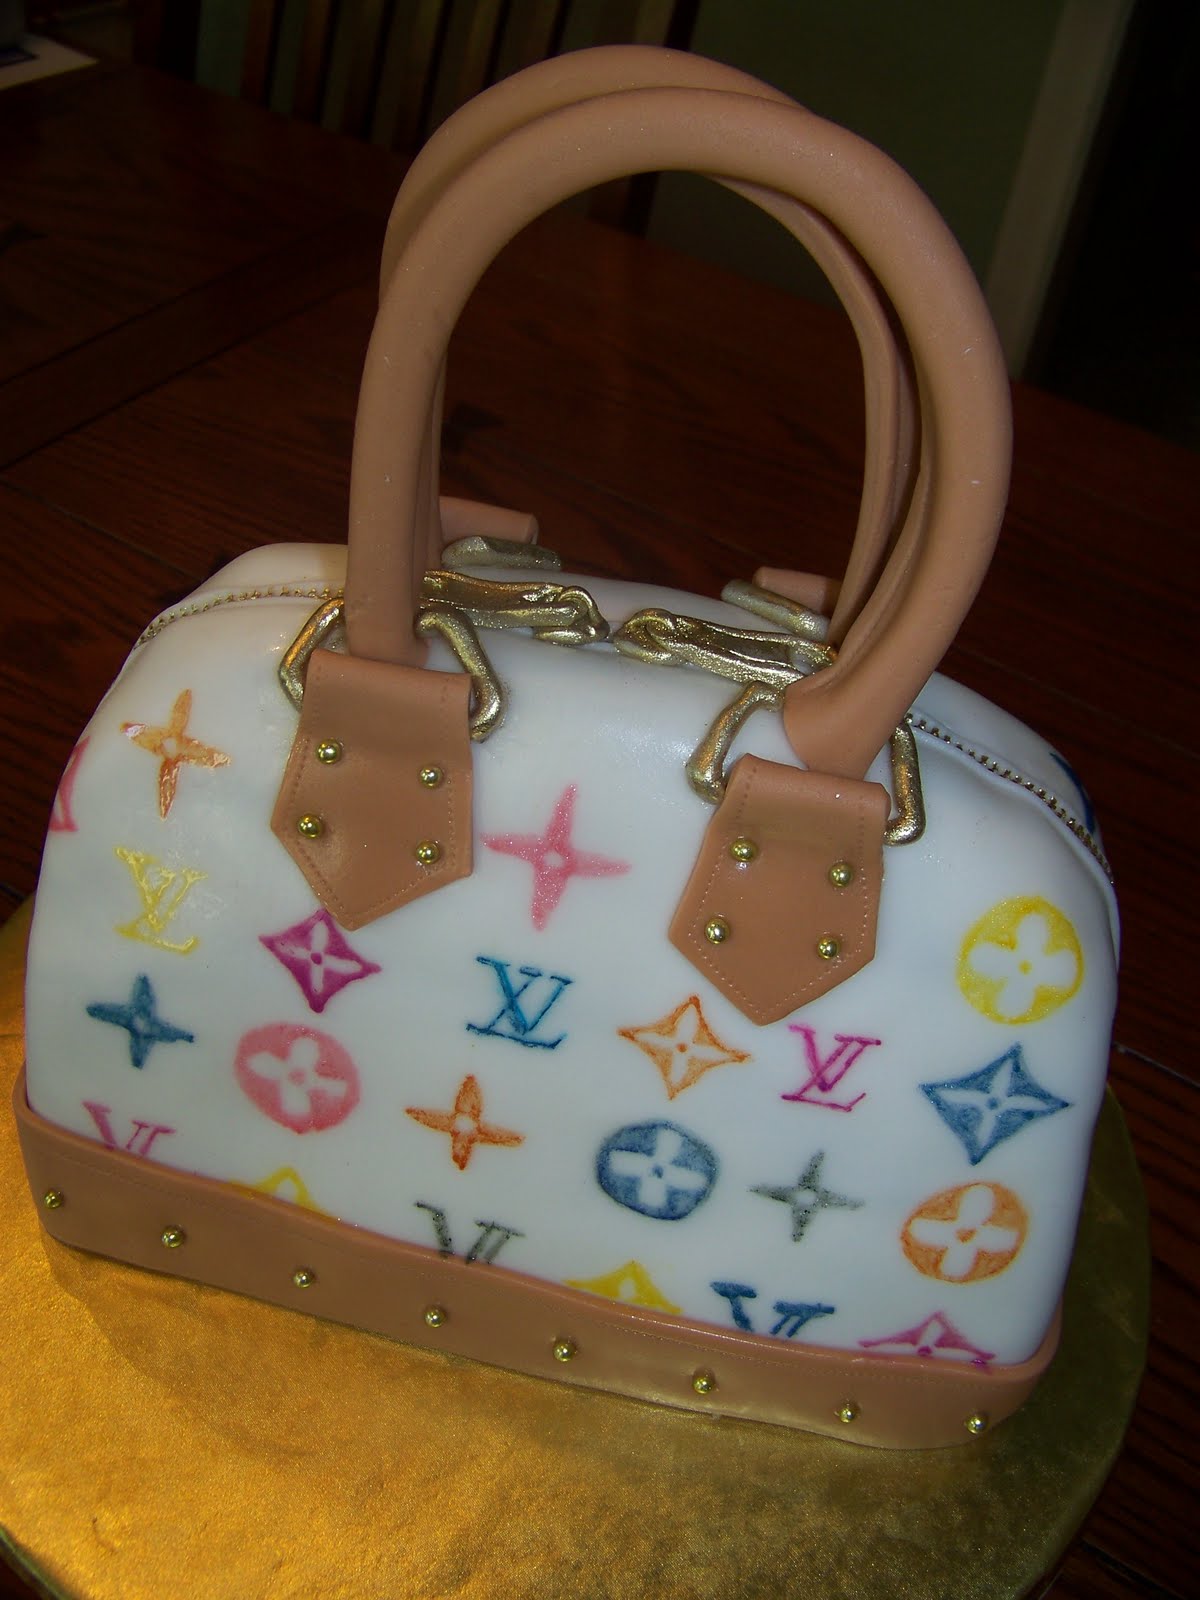 Louis Vuitton Handbag  Handbag cakes, Louis vuitton cake, Purse cake